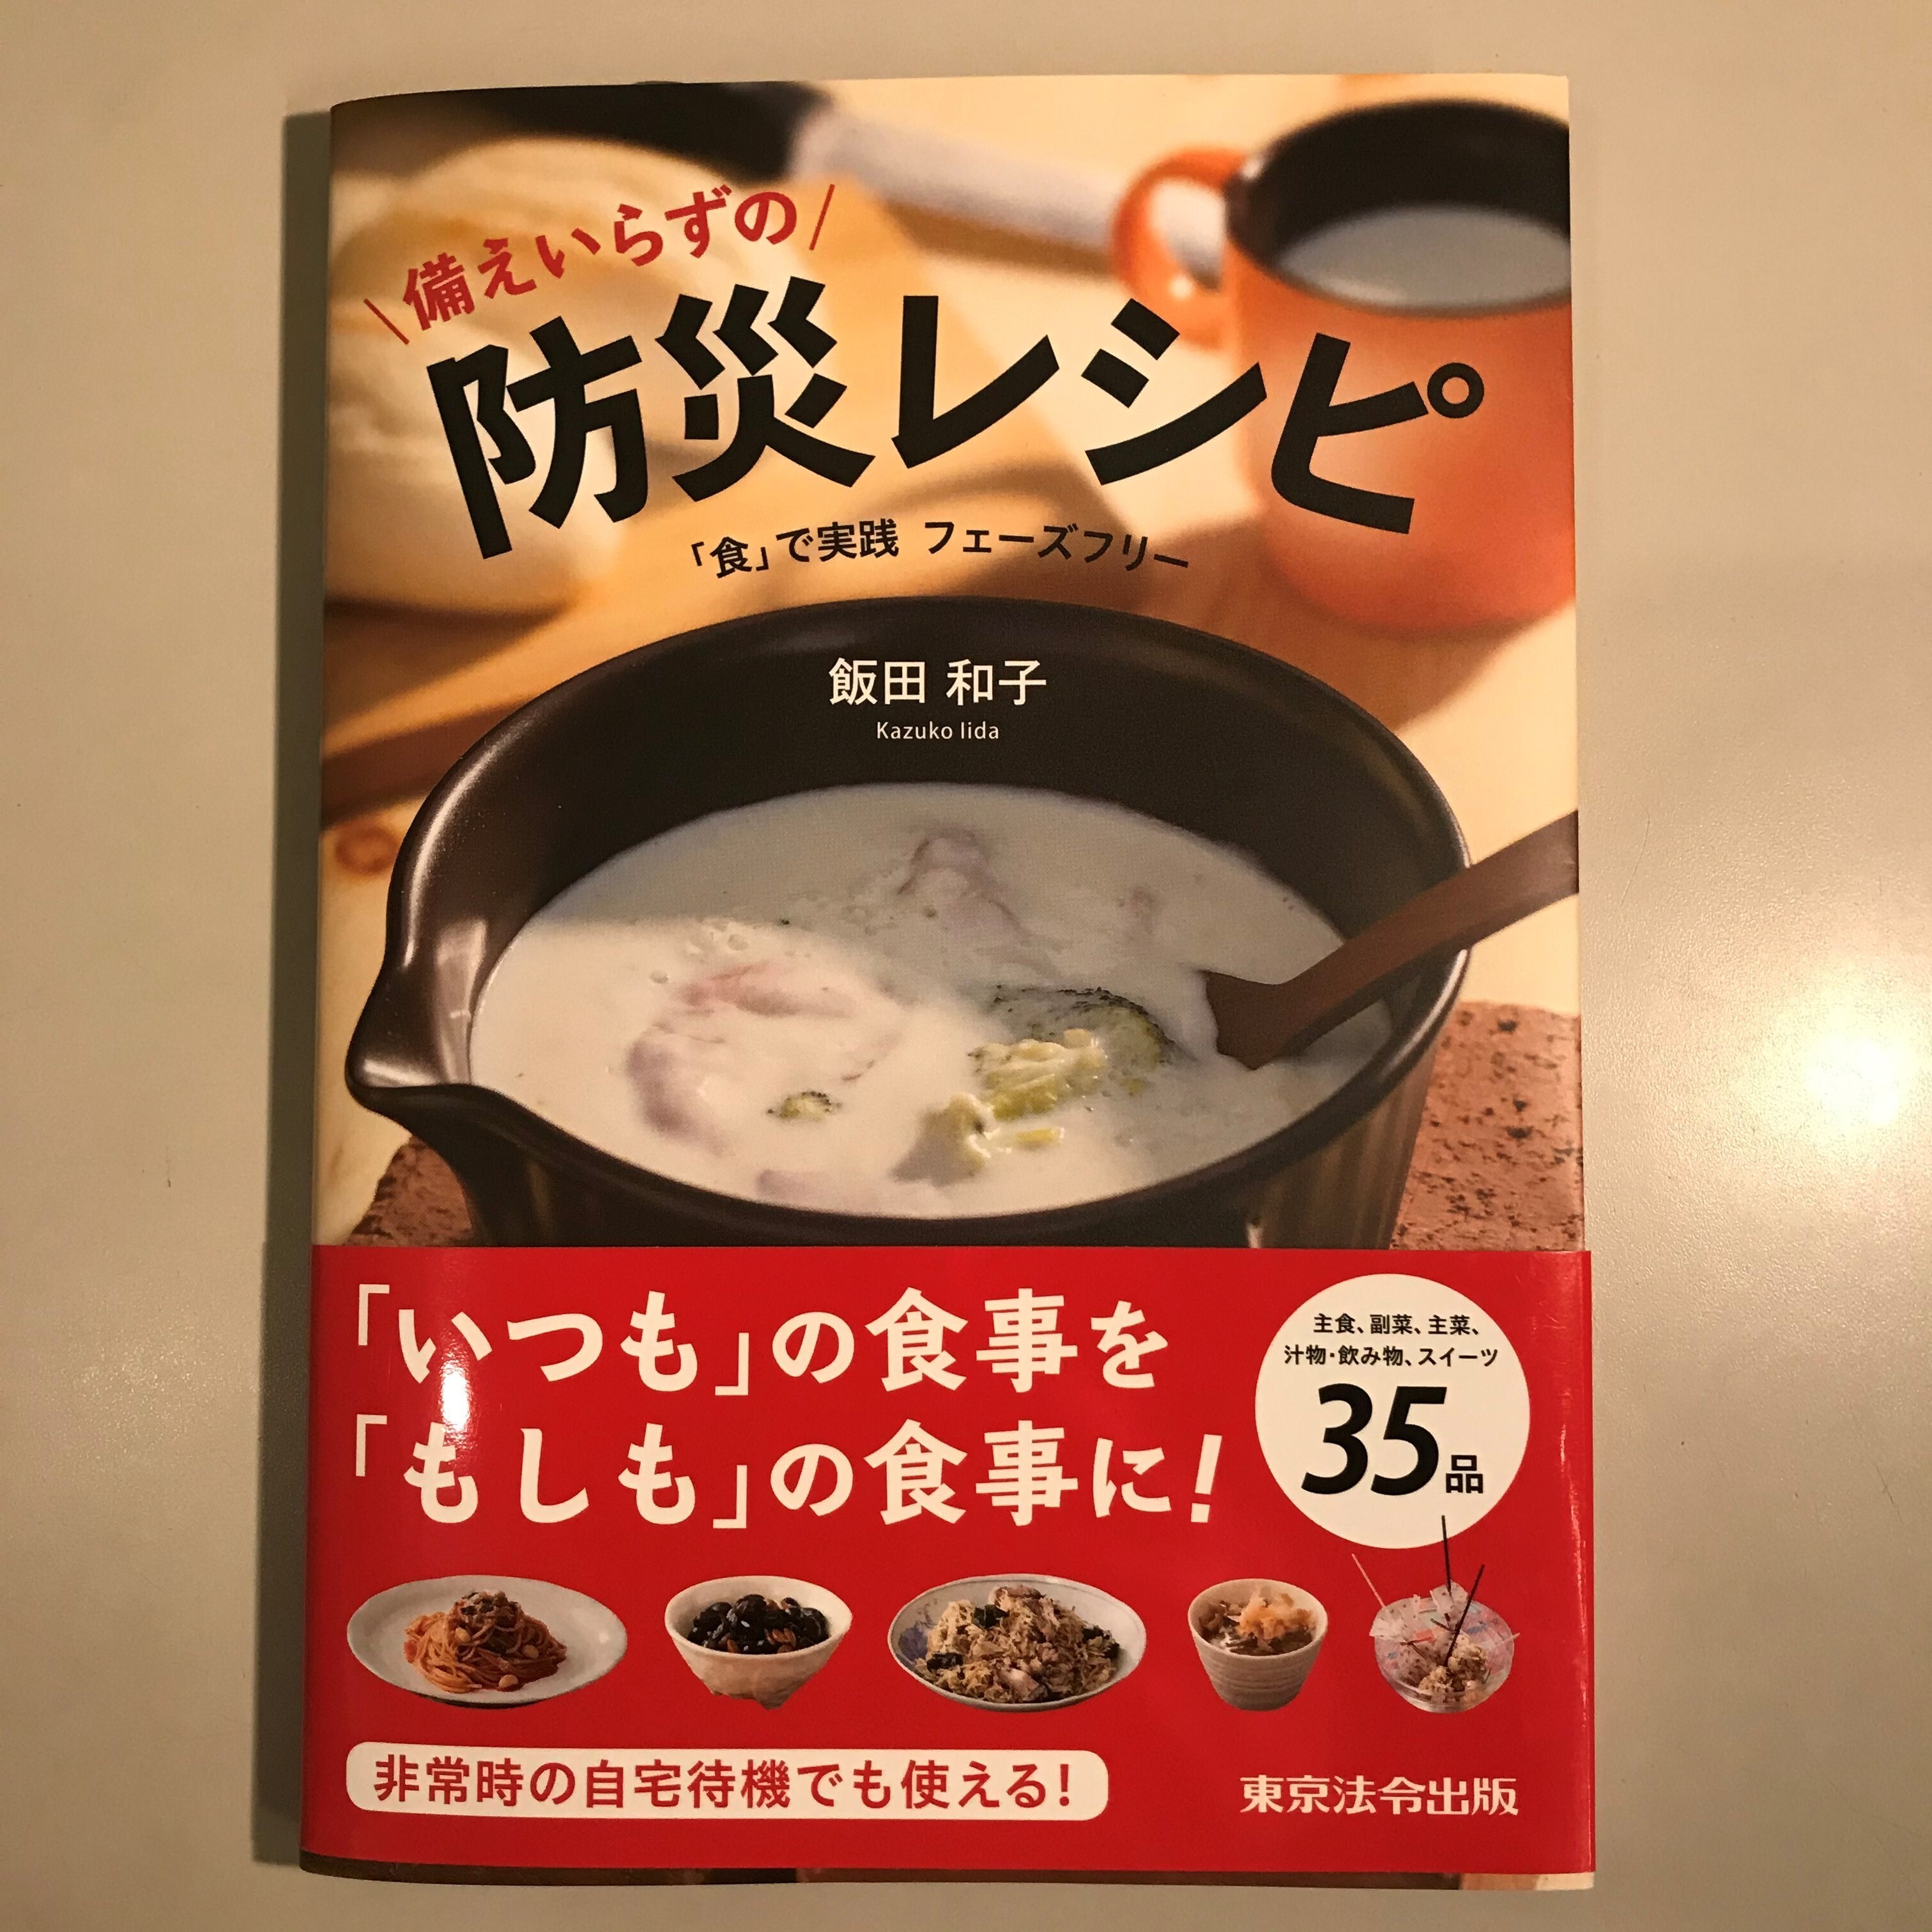 【アトレ恵比寿】MUJIBOOKS書籍のご紹介『備えいらずの防災レシピ』